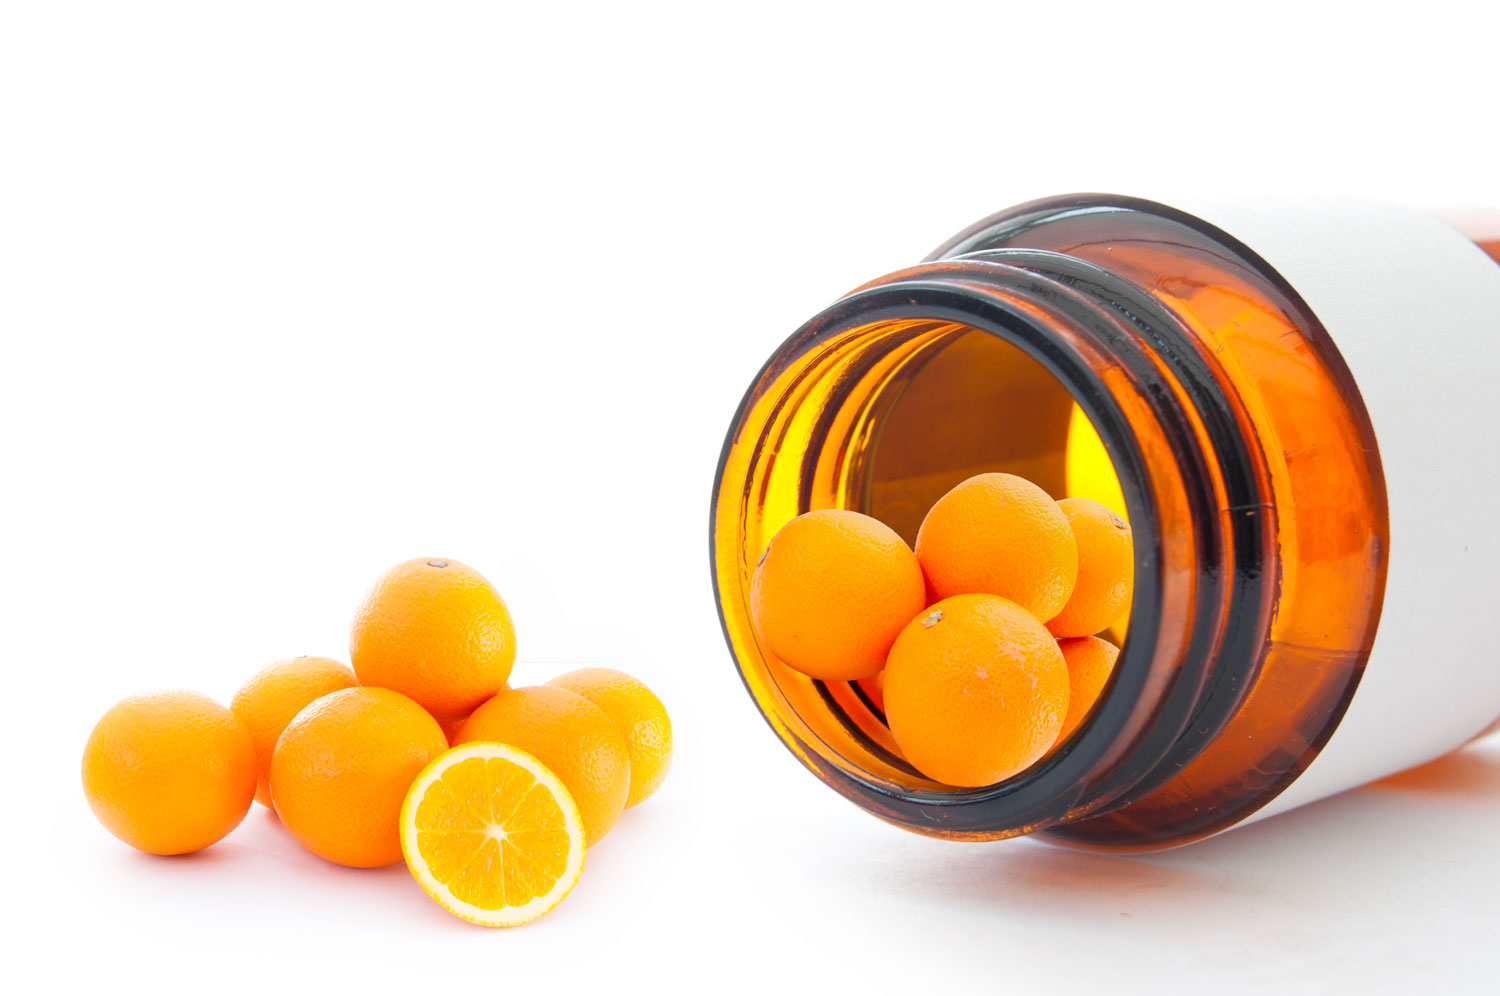 proprietà della vitamina c - differenze tra naturale e sintetica